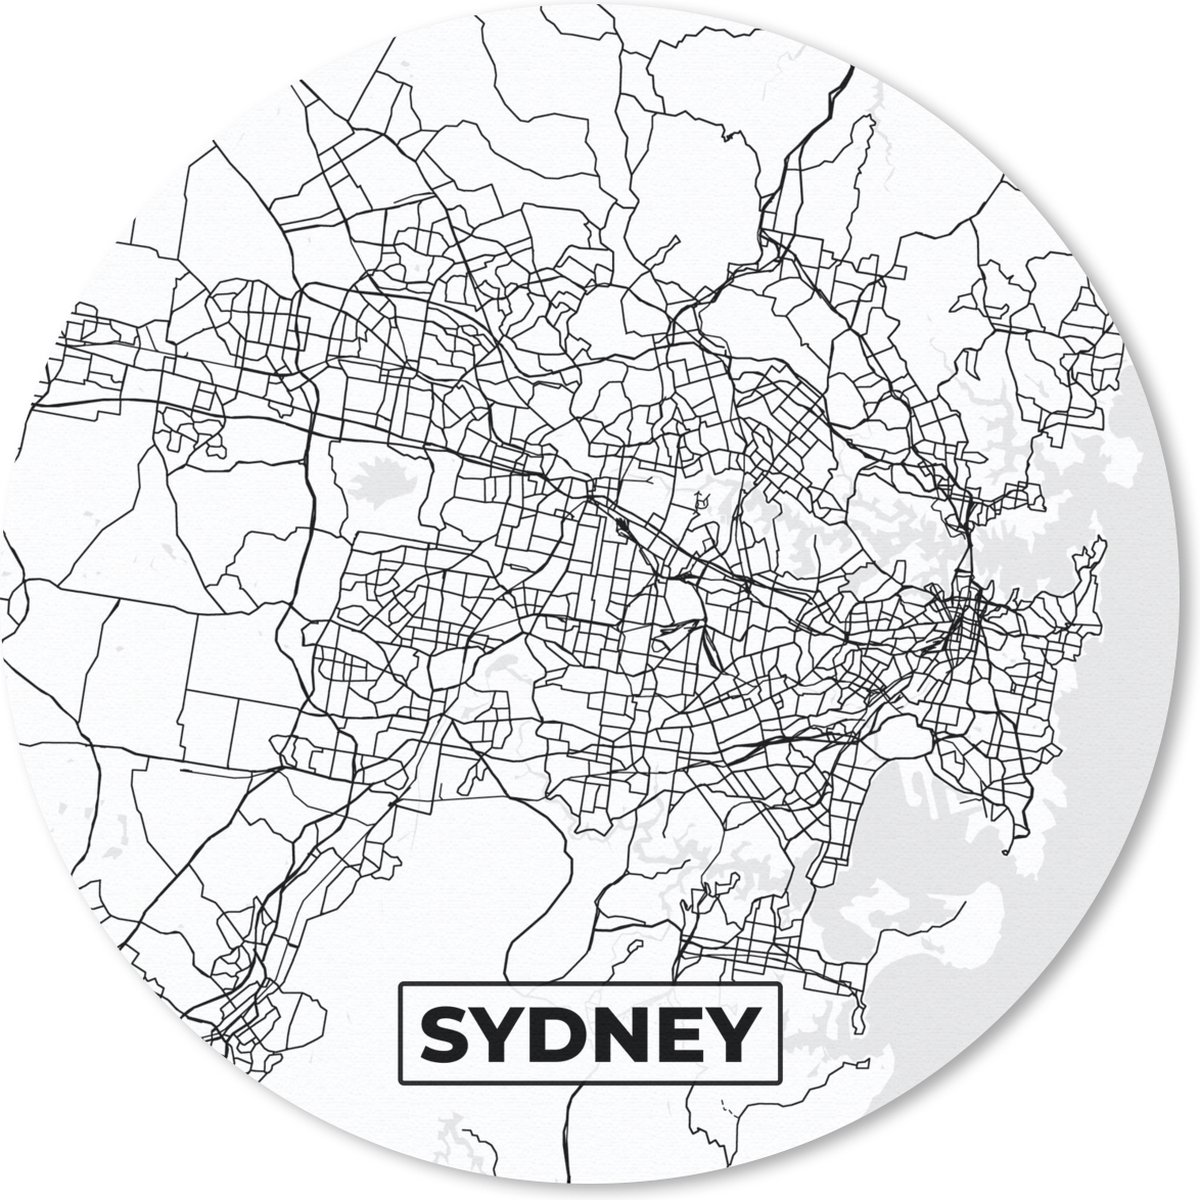 Muismat - Mousepad - Rond - Kaart - Sydney - Stadskaart - Plattegrond - Zwart Wit - 50x50 cm - Ronde muismat